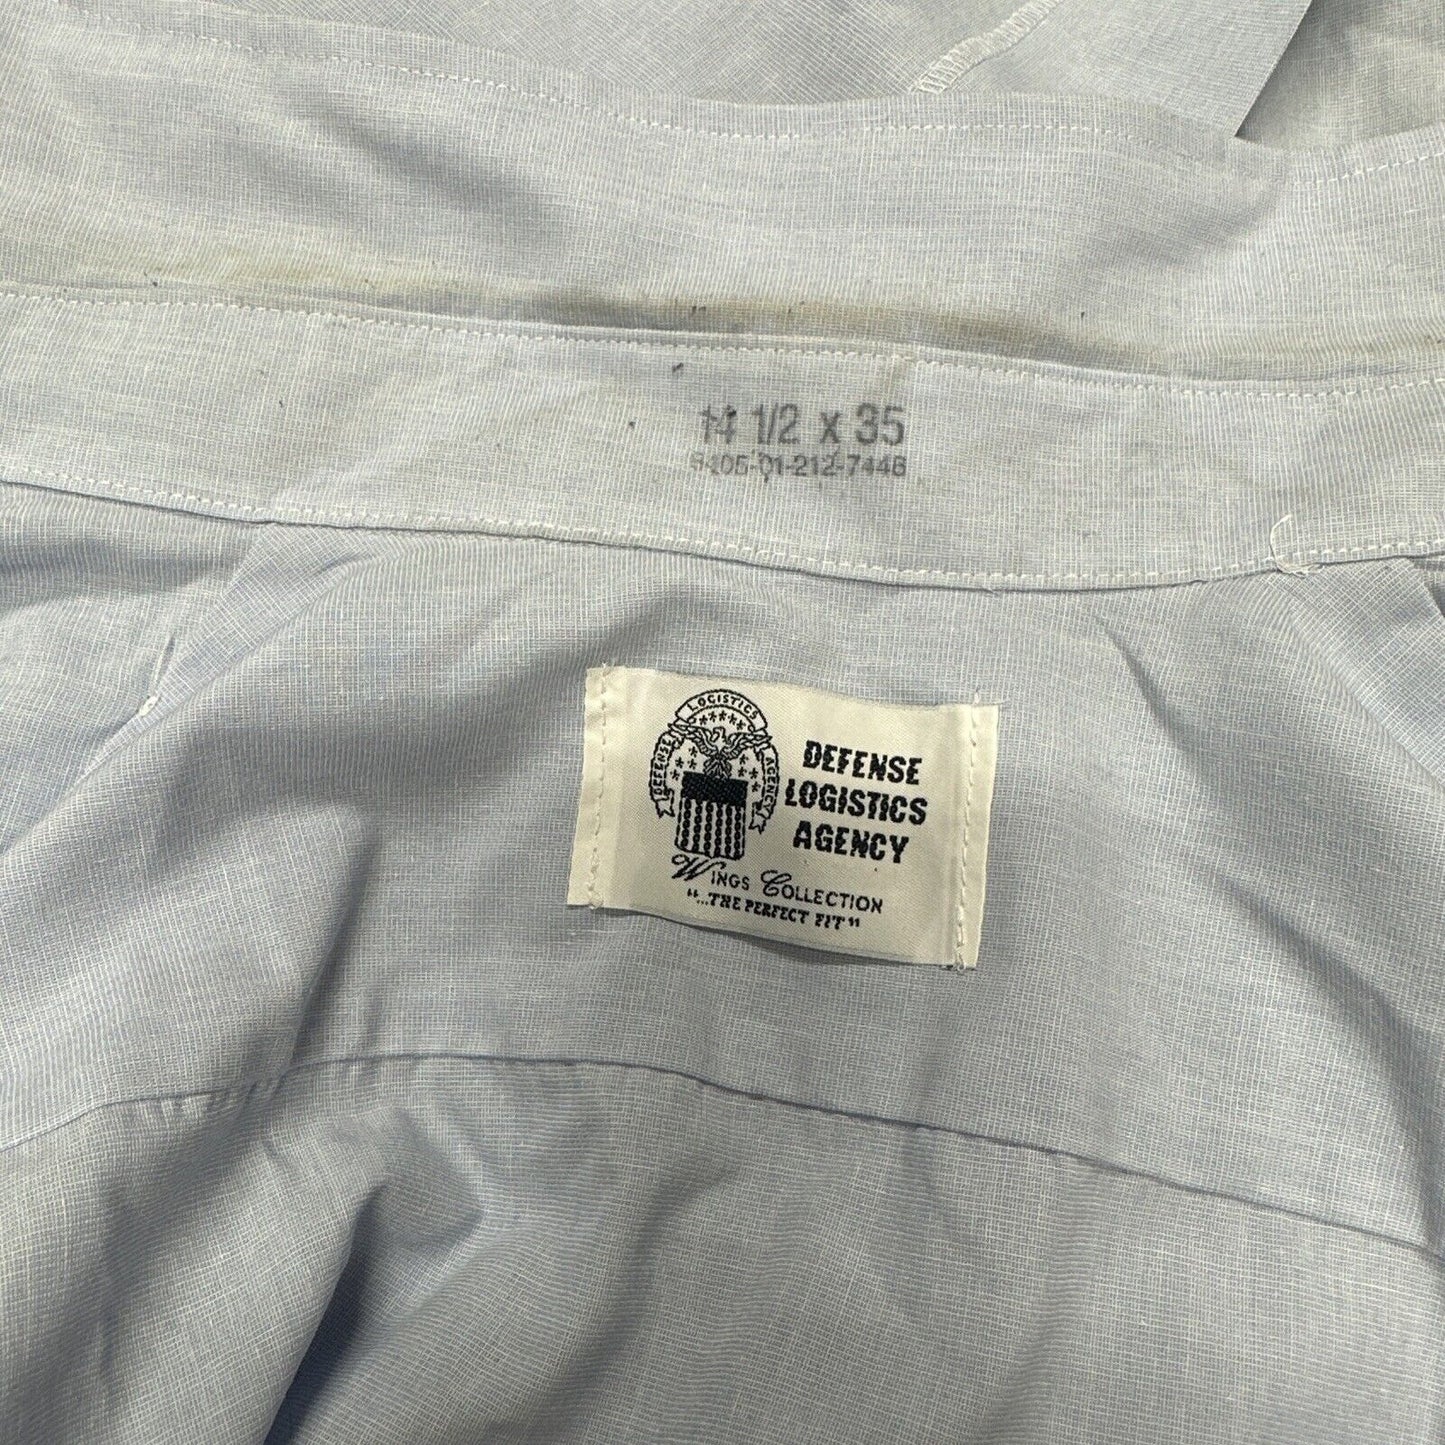 Men’s USAF USSF 14 1/2 X 35 Long Sleeve Dress Blues Shirt Button Up